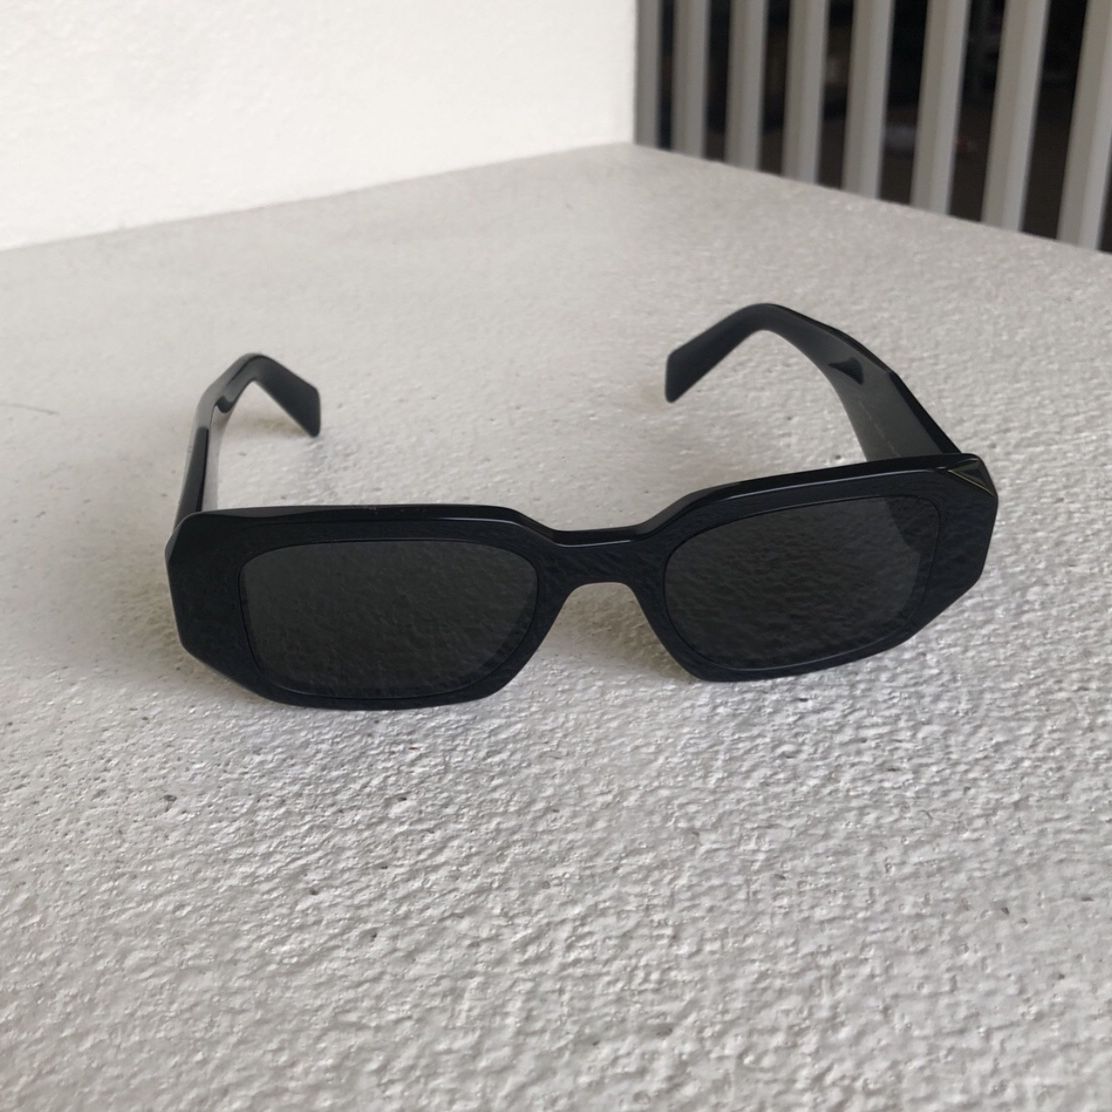 Prada Sunglasses SEND OFFERS!! for Sale in Marina, CA - OfferUp